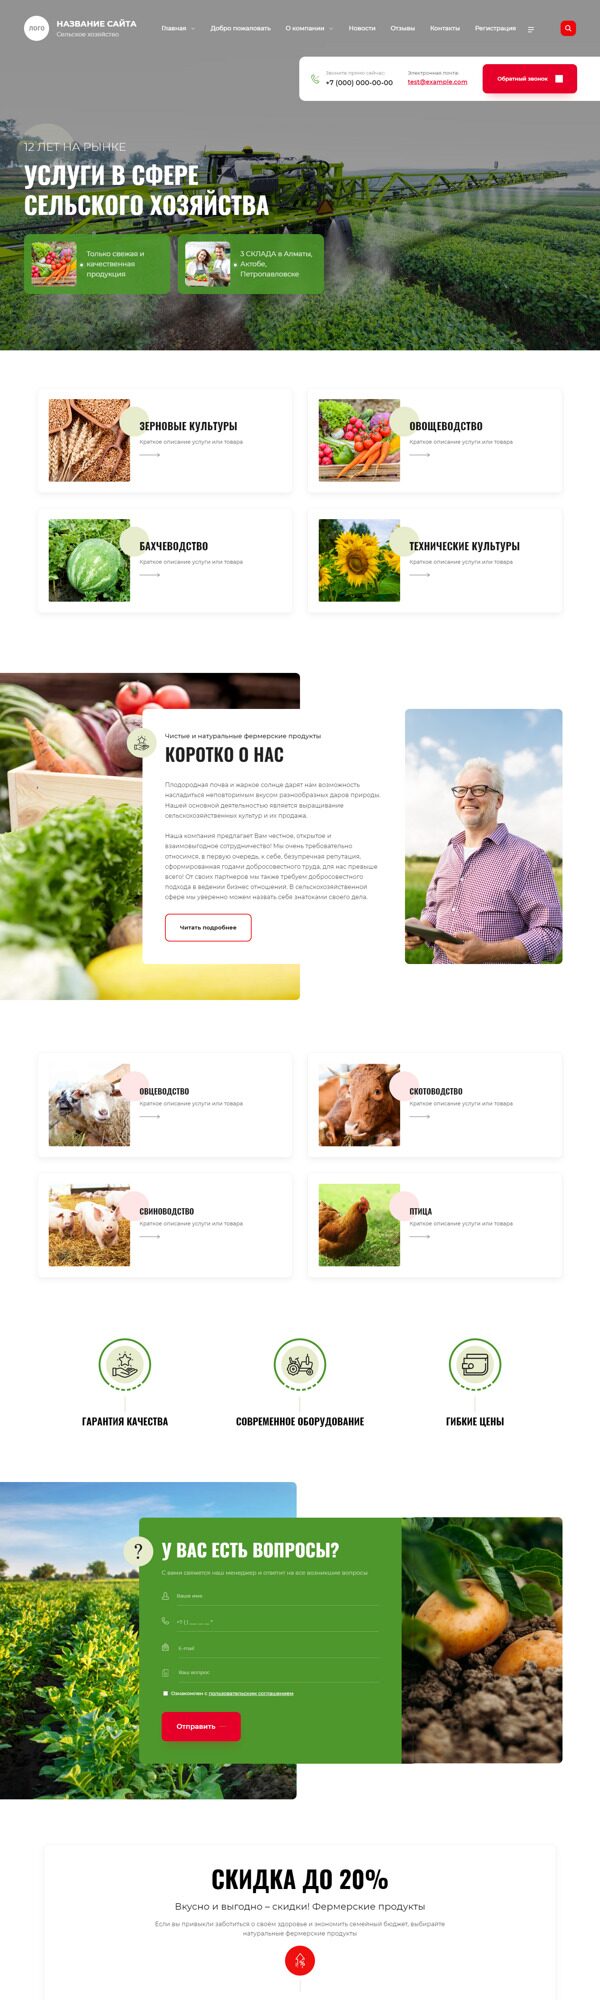 Готовый Сайт-Бизнес № 4603183 - Сельское хозяйство (Десктопная версия)